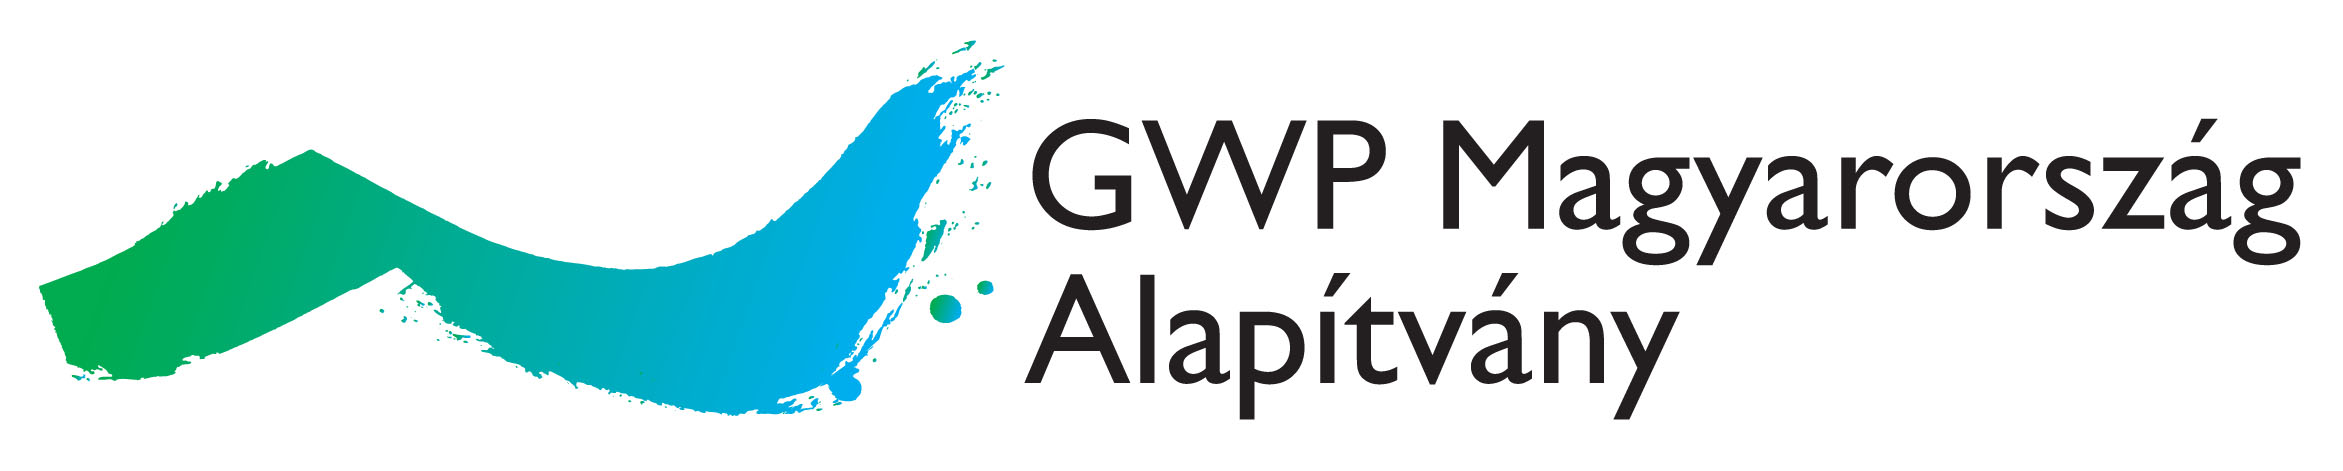 GWP logo UJ 2015 R